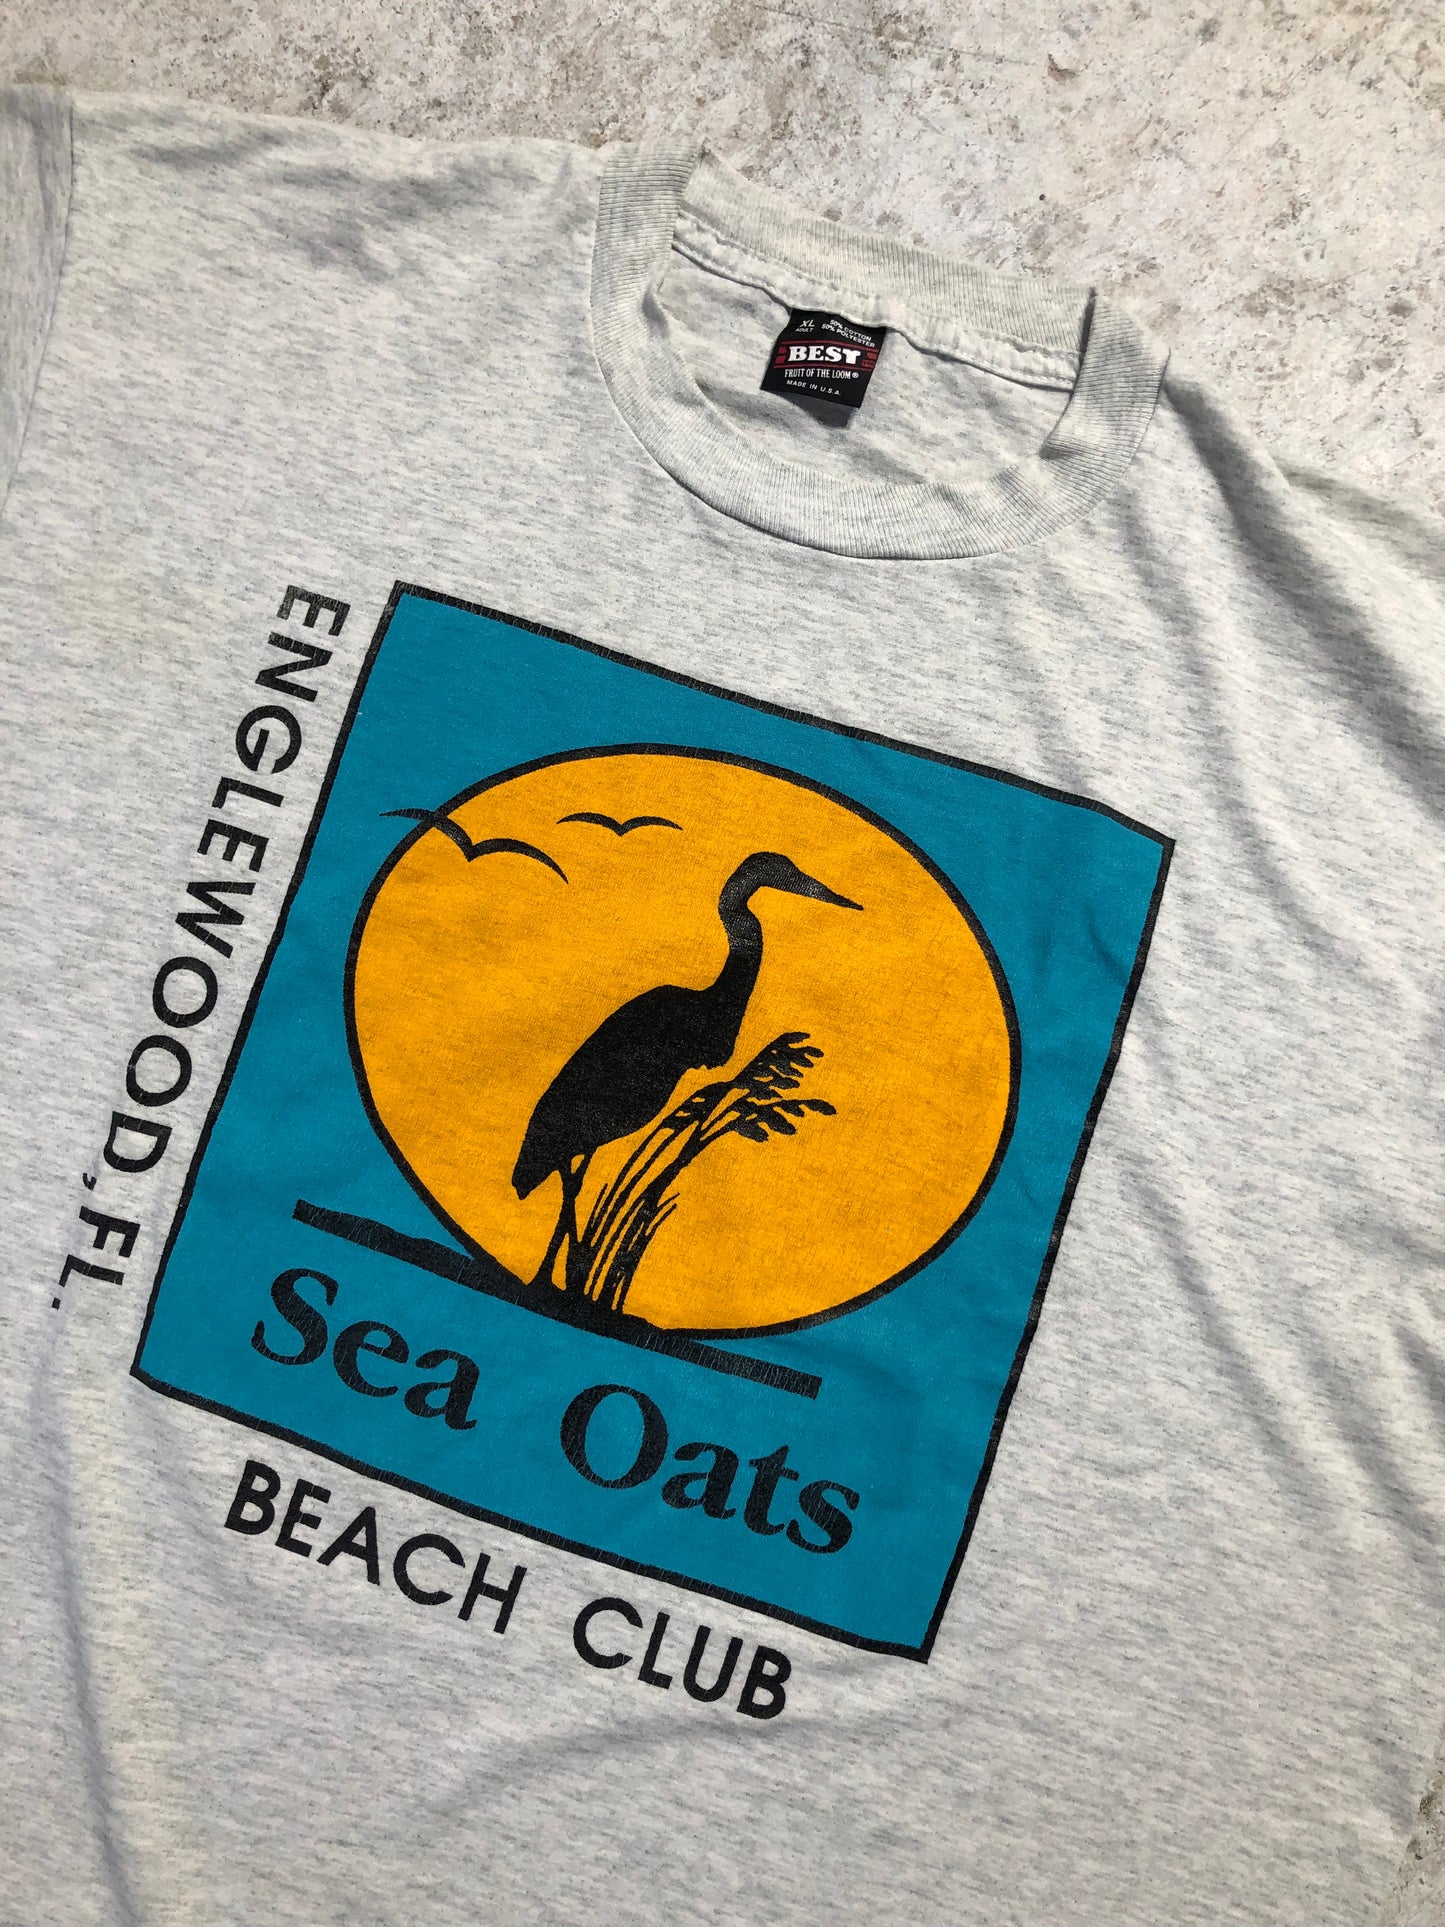 90s Englewood Florida Beach Club Tee (X-Large), Tee - Vintage64.com